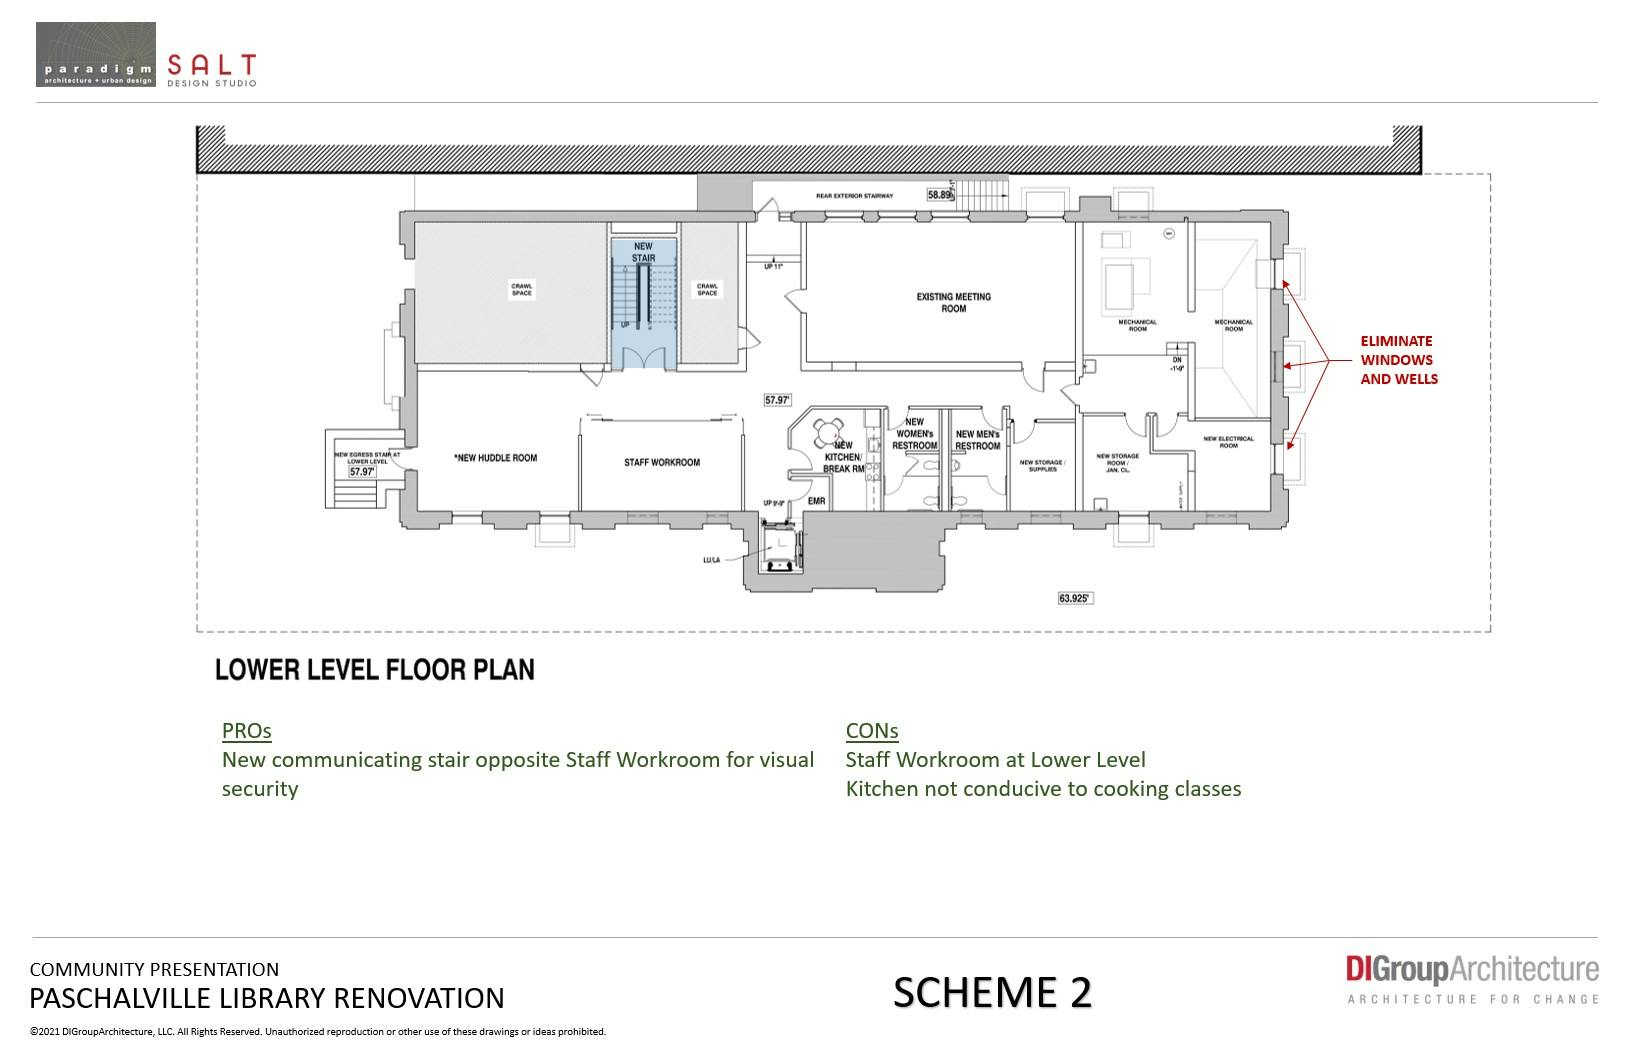 Lower Level Floor Plan - Scheme 2